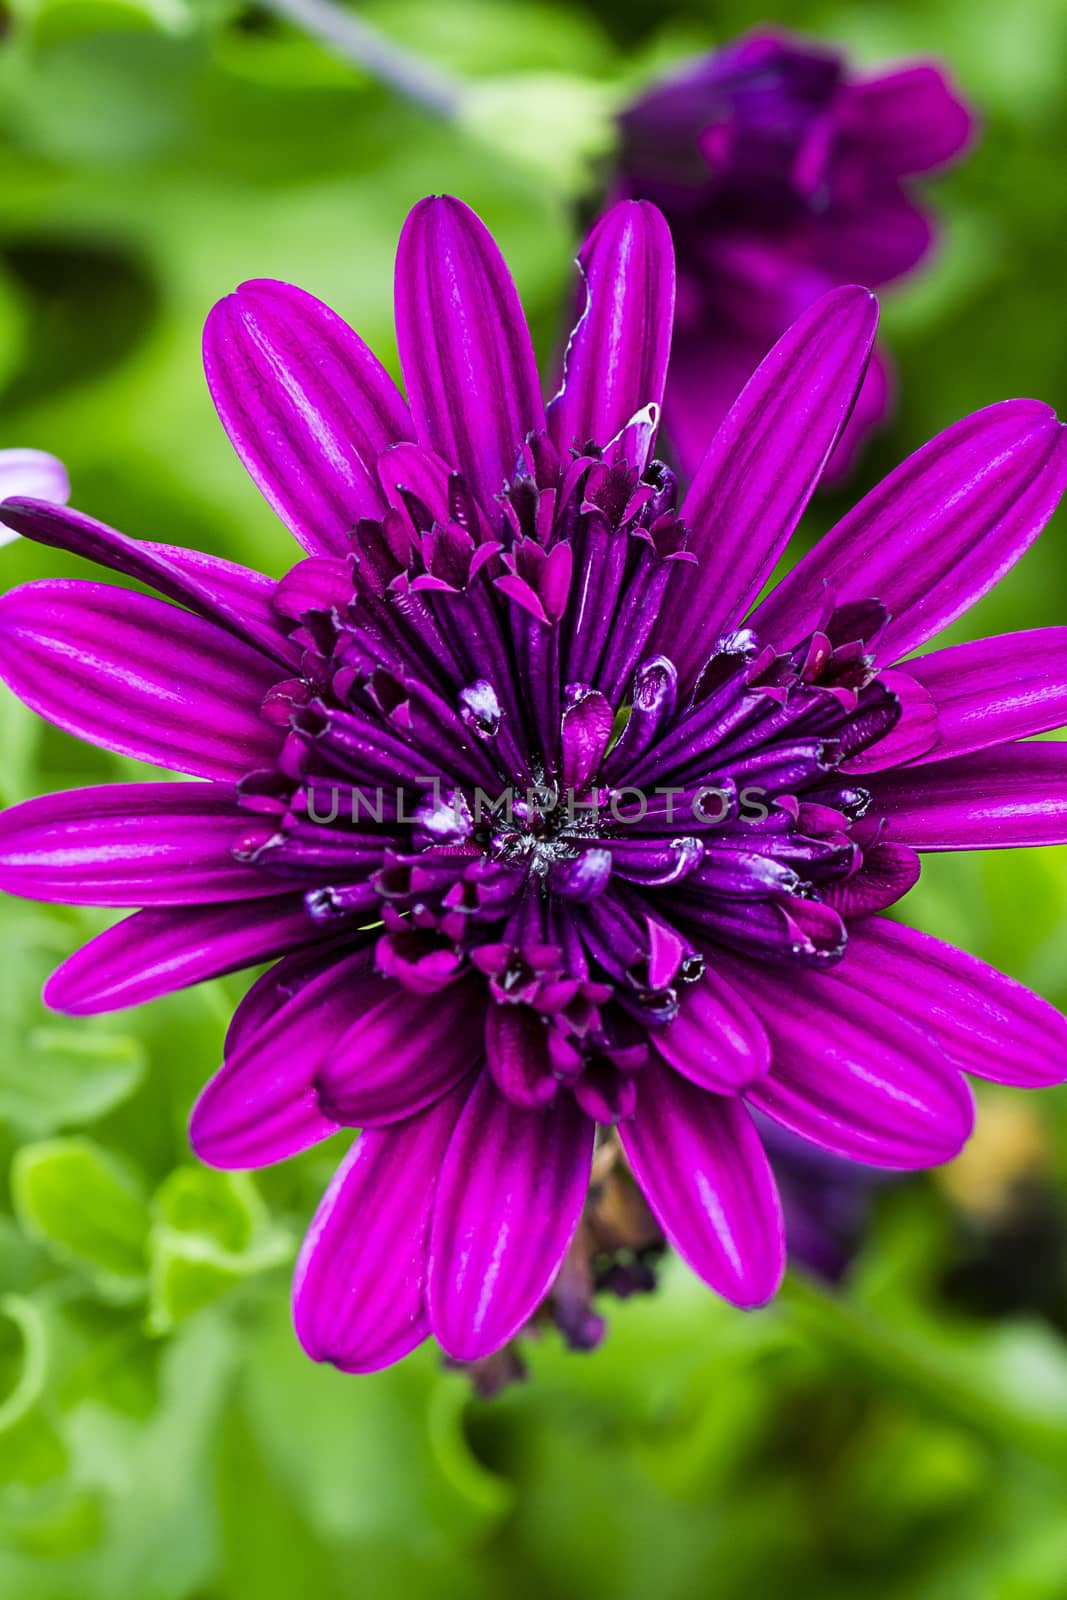 small purple flower in a garden